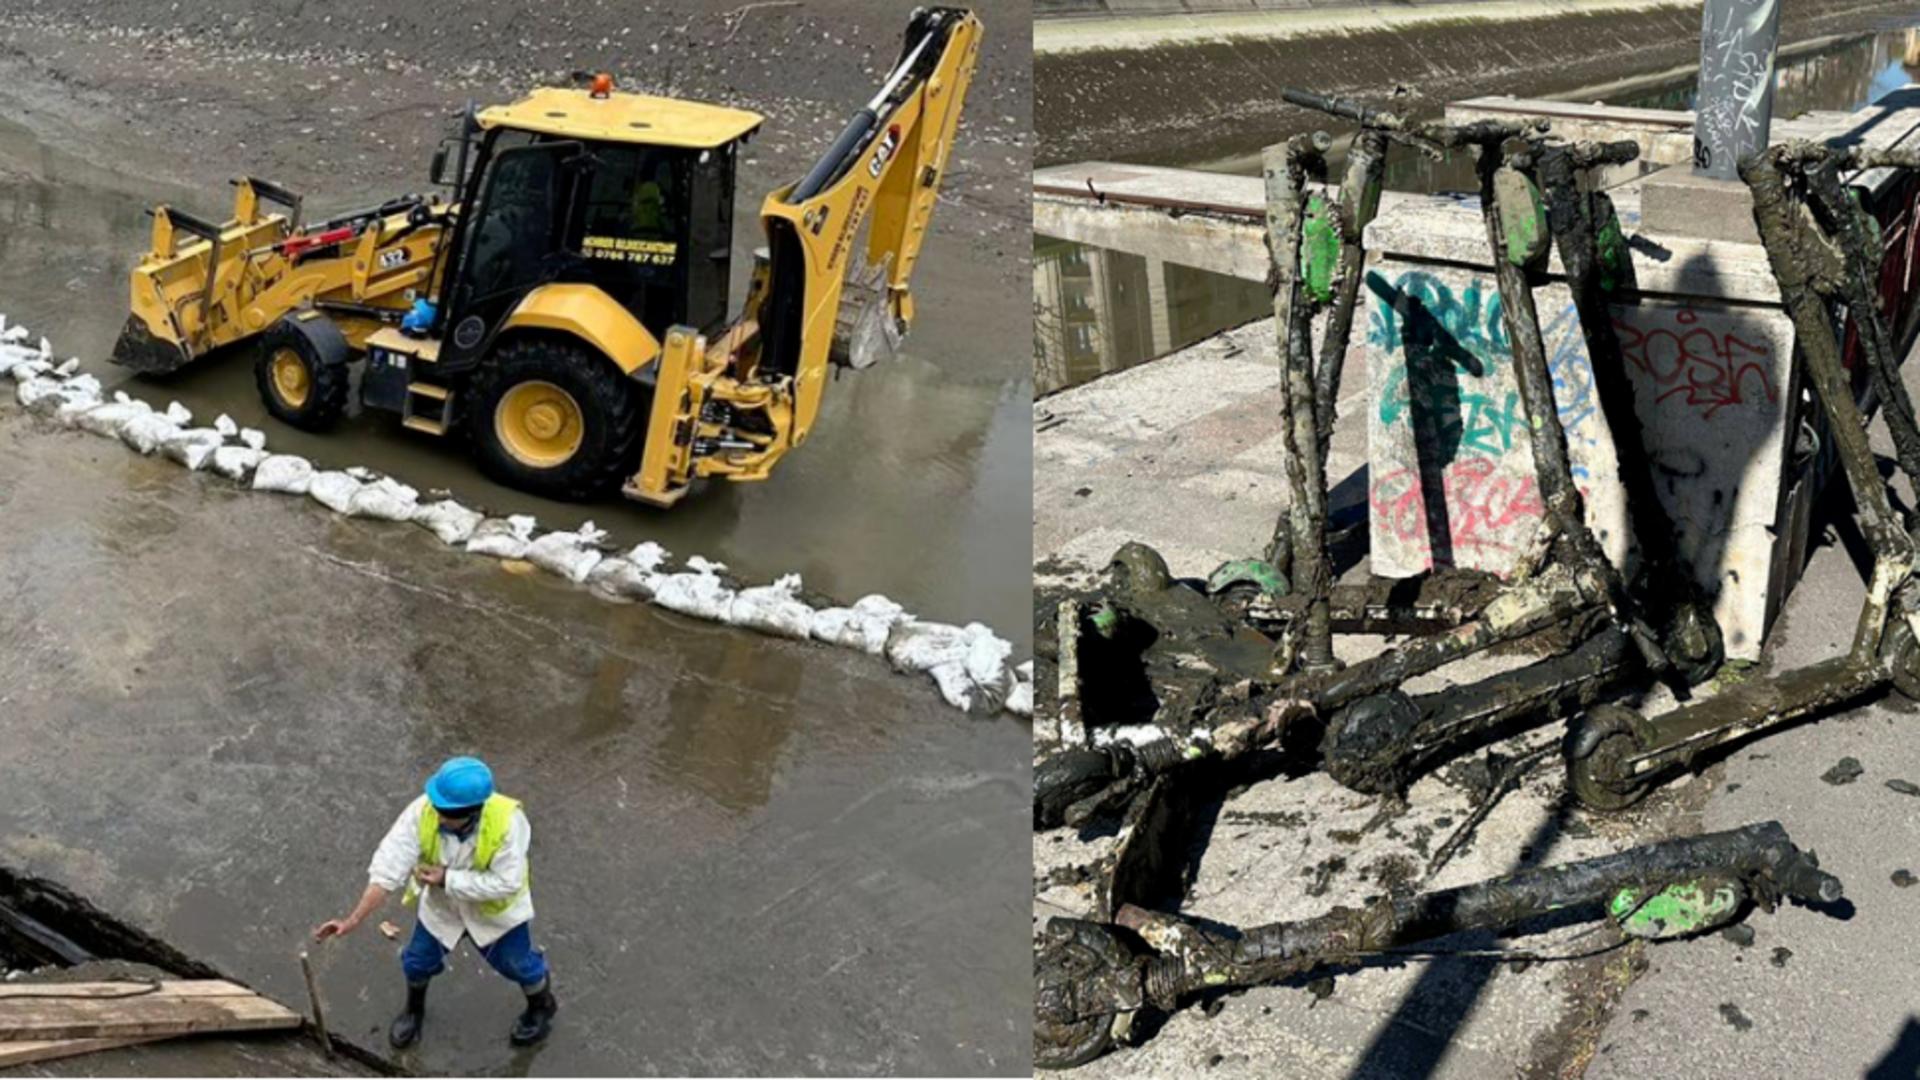 Lucrări pe râul Dâmbovița între Operă și planșeul de la Unirii, pentru remedierea unor fisuri. Foto: Facebook